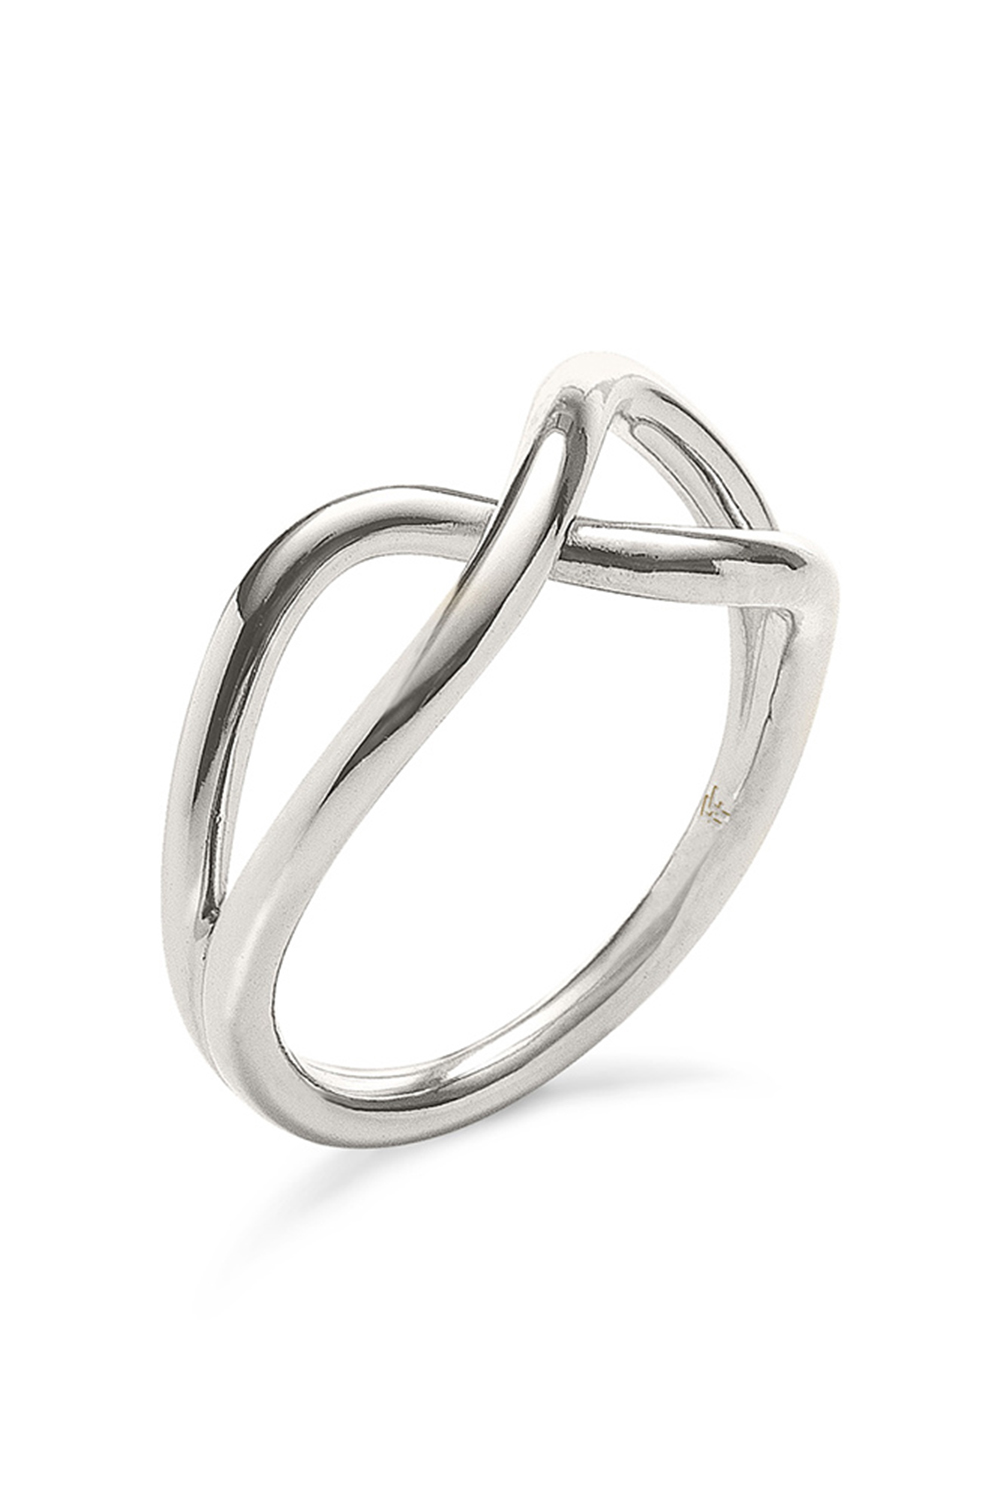 Γυναικεία/Αξεσουάρ/Κοσμήματα/Δαχτυλίδια FOLLI FOLLIE - Γυναικείο δαχτυλίδι από ορείχαλκο FOLLI FOLLIE FLUIDITY ασημί